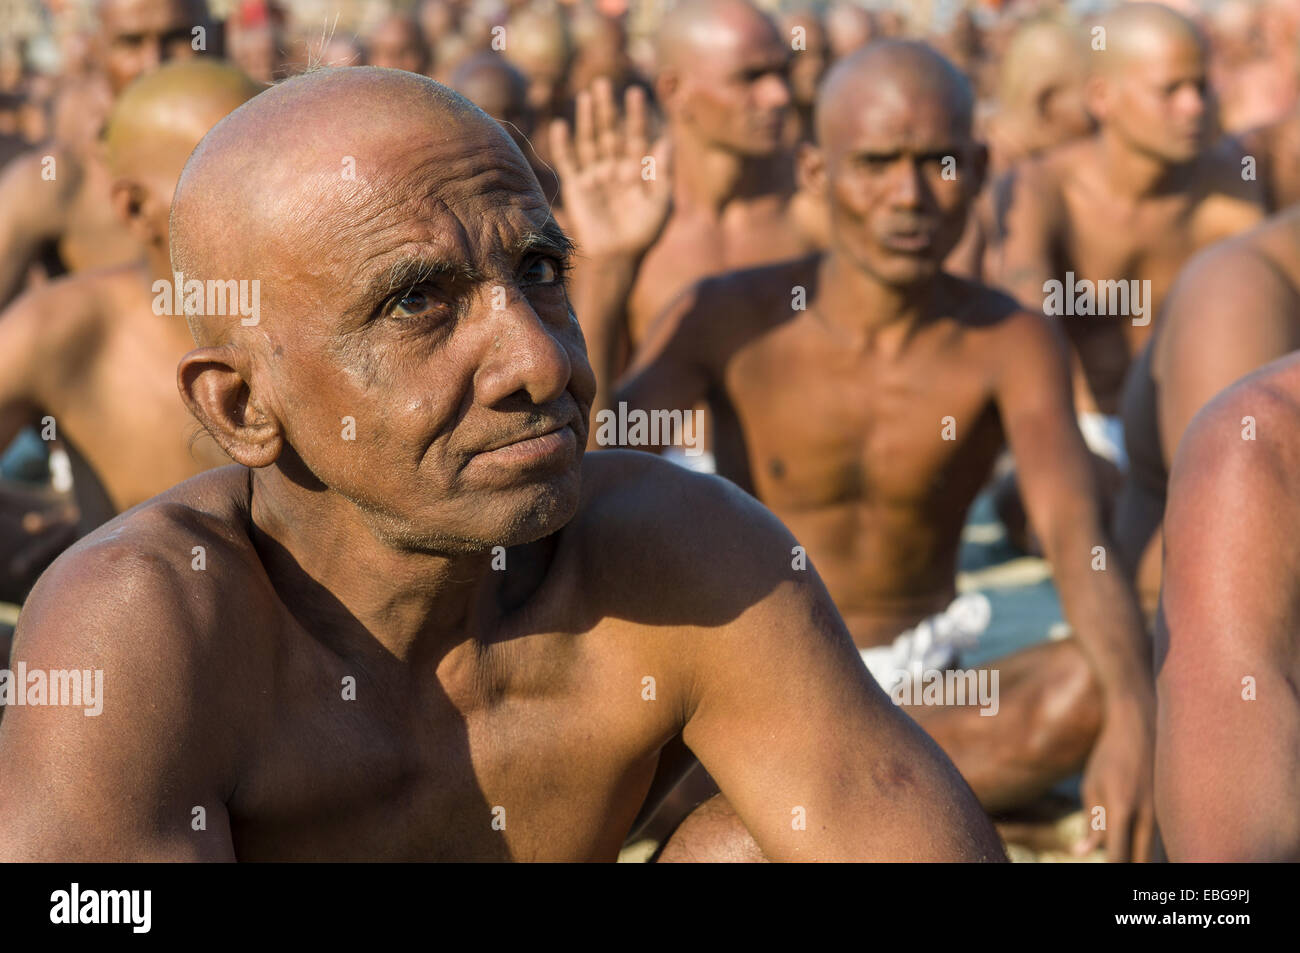 Man joining the initiation of new sadhus, during Kumbha Mela festival, Allahabad, Uttar Pradesh, India Stock Photo